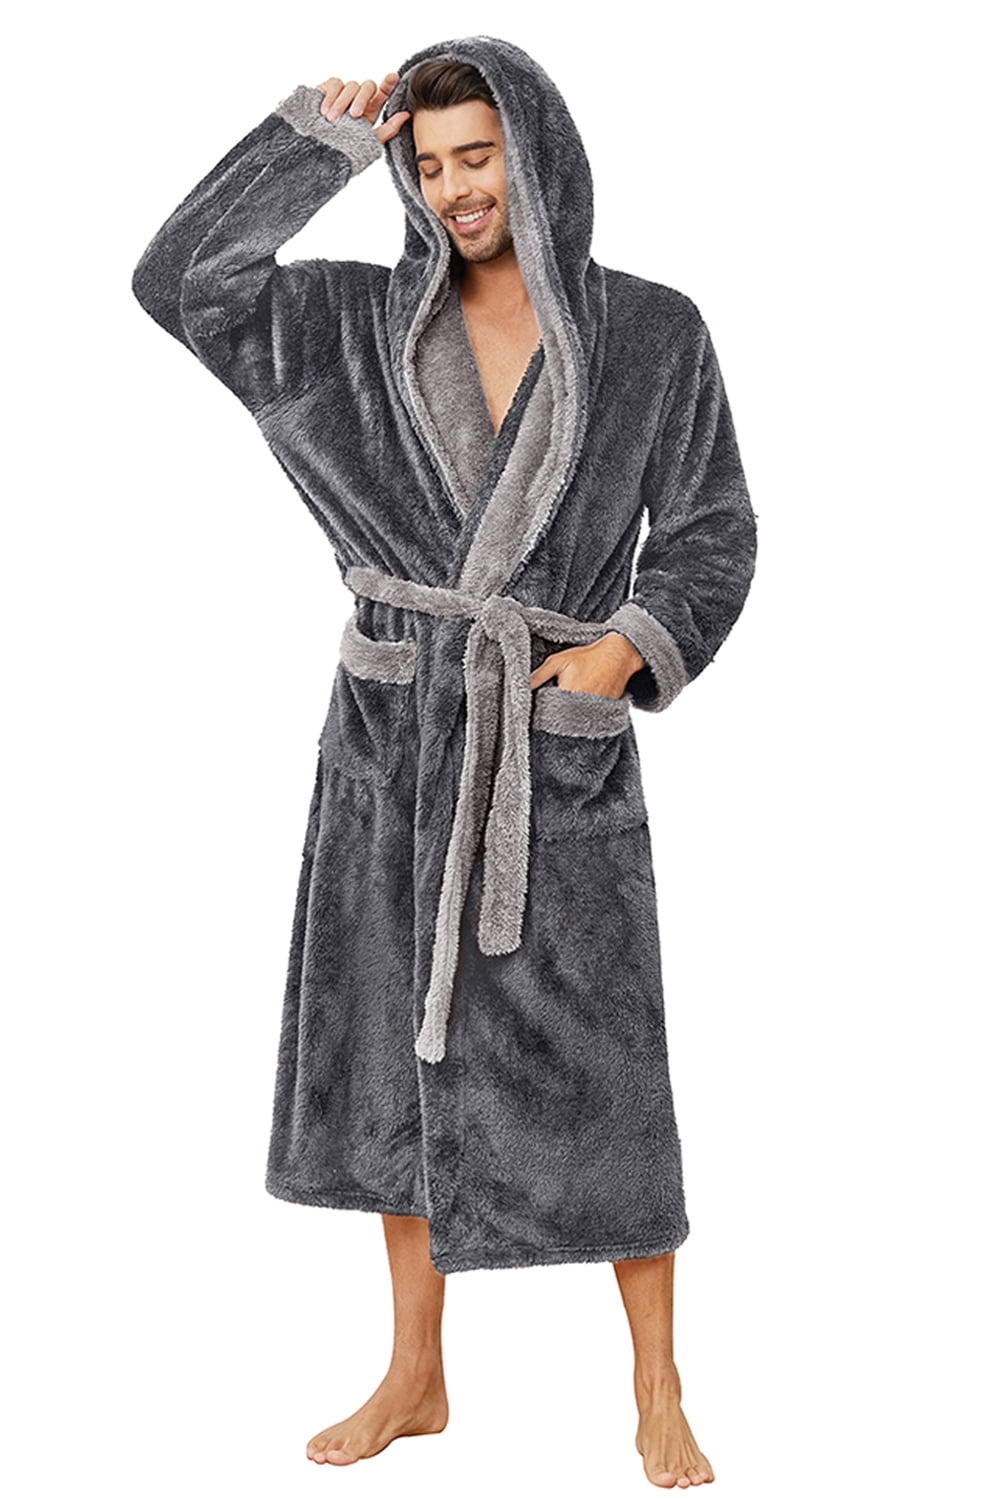 Vulcanodon Mens Hooded Robe Big And Tall Full Length Plush Robe For Men Long Fleece Bathrobe 